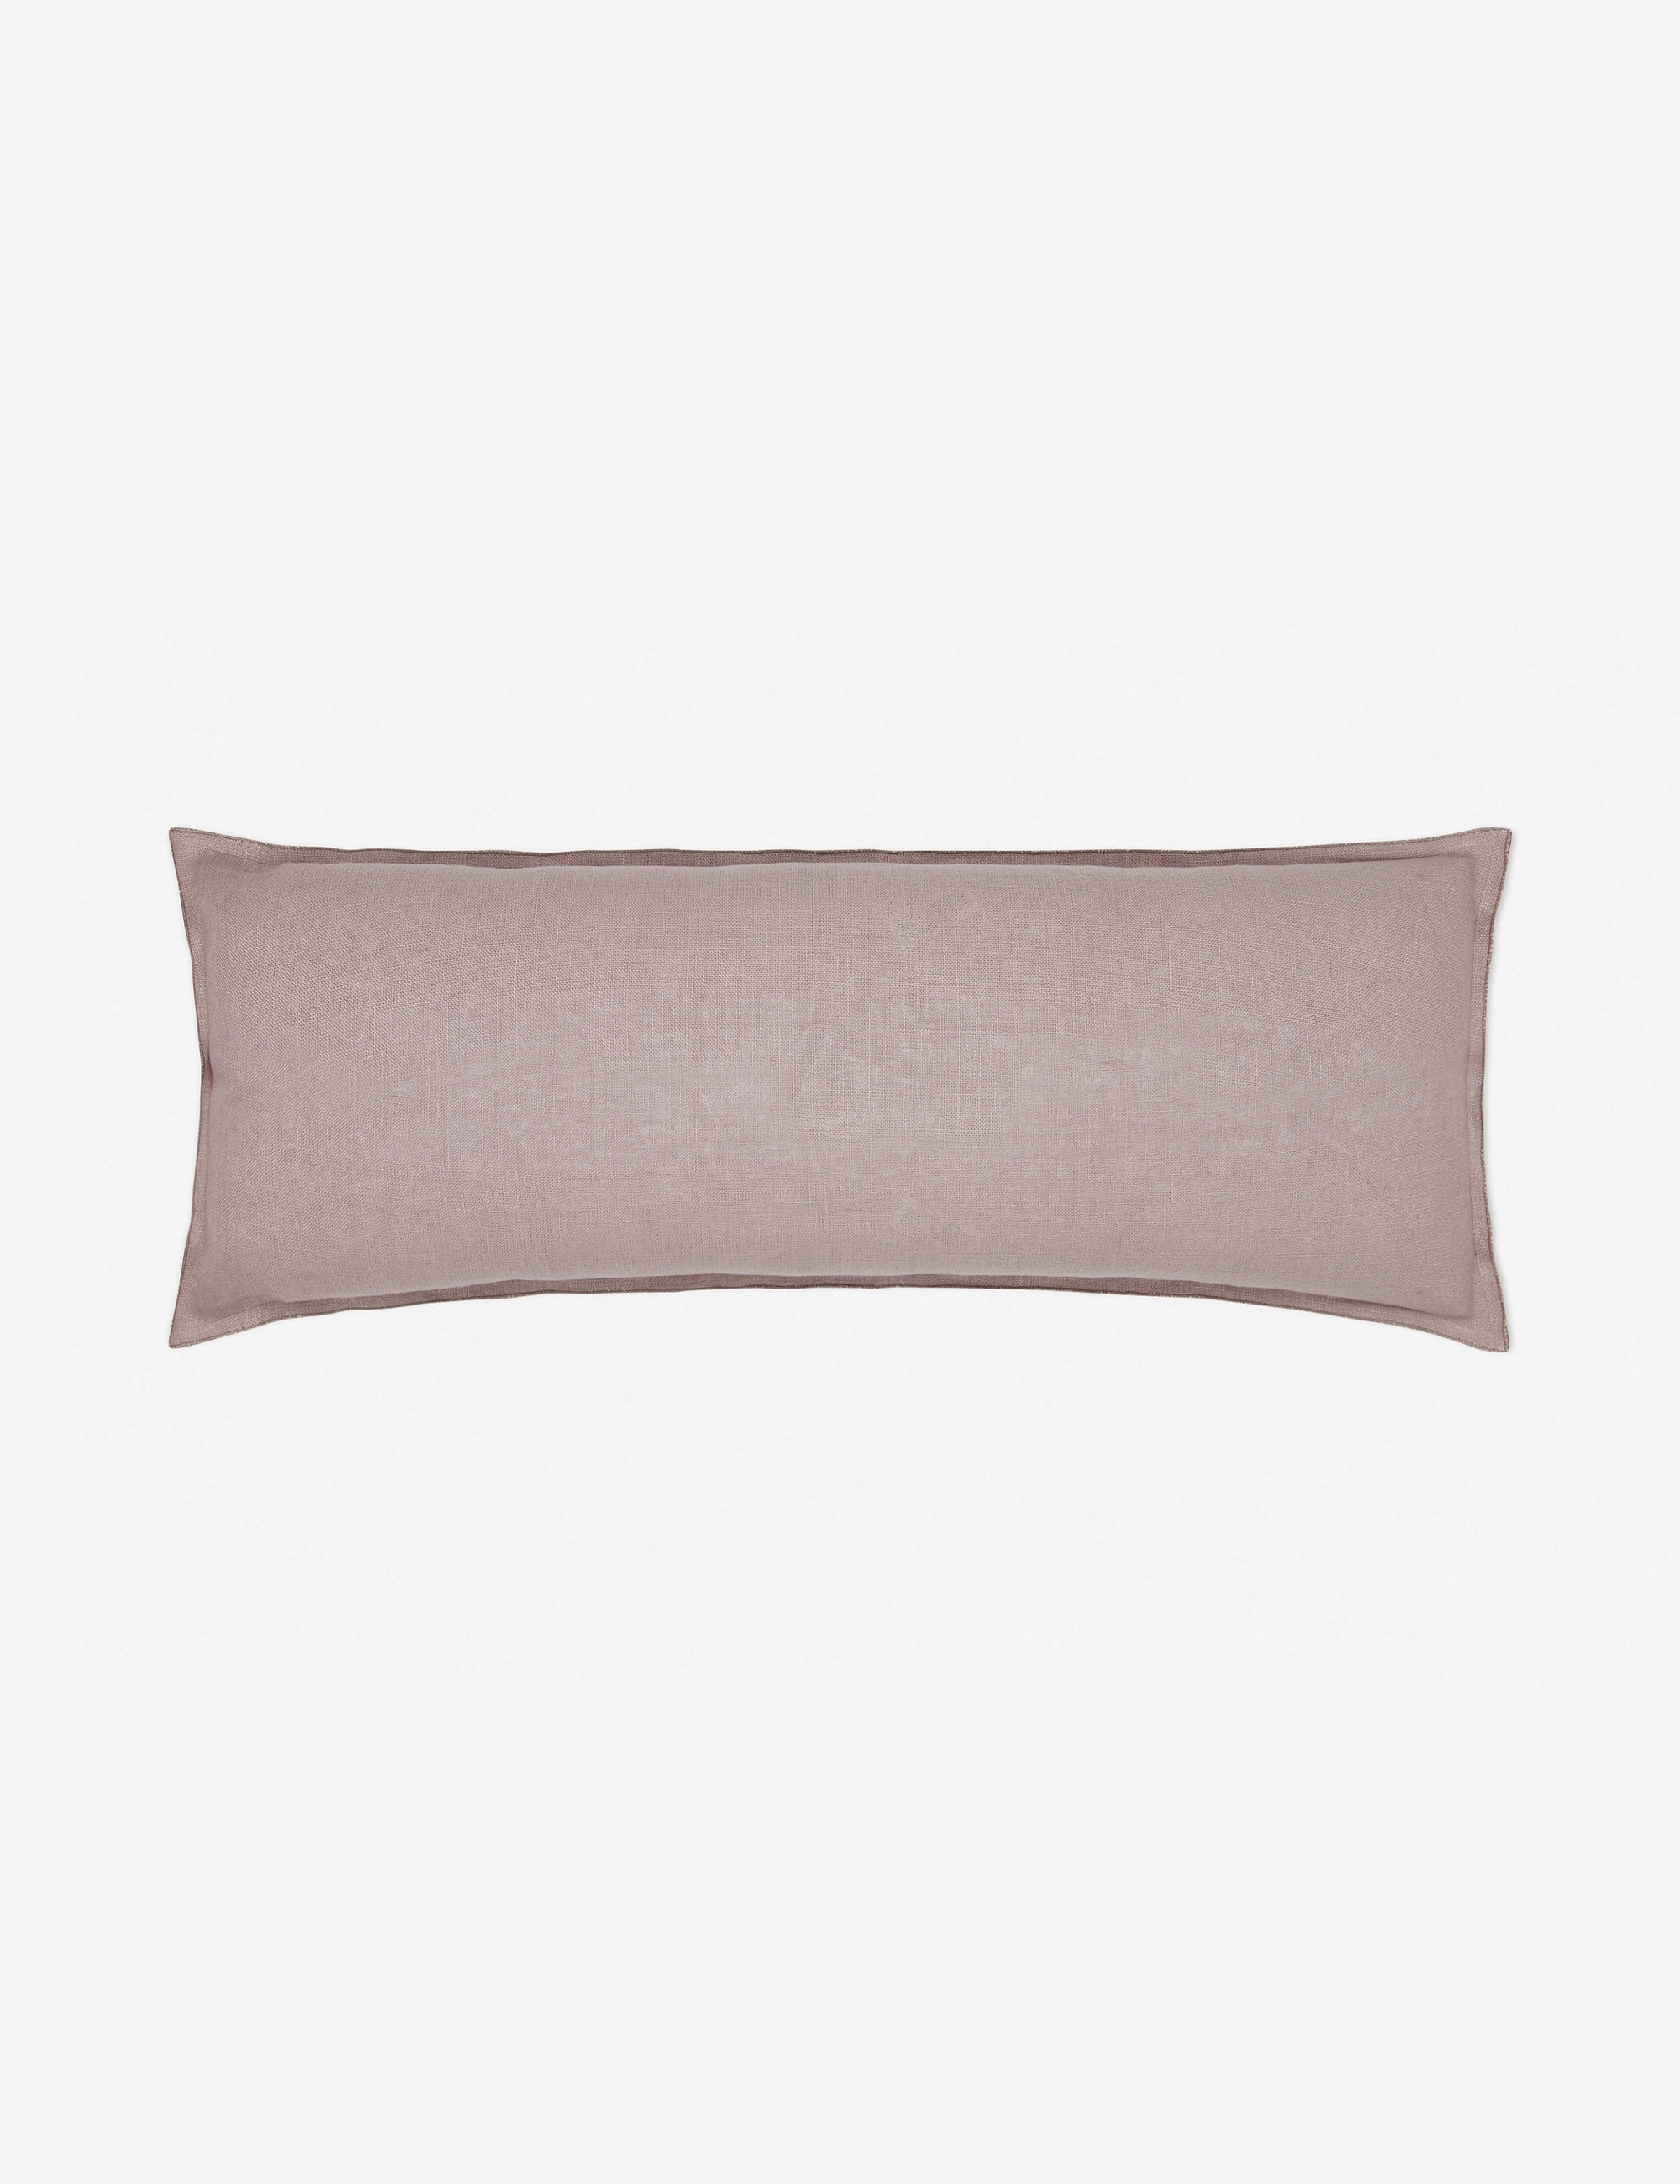 Arlo Linen Long Lumbar Pillow, Dark Natural - Image 2